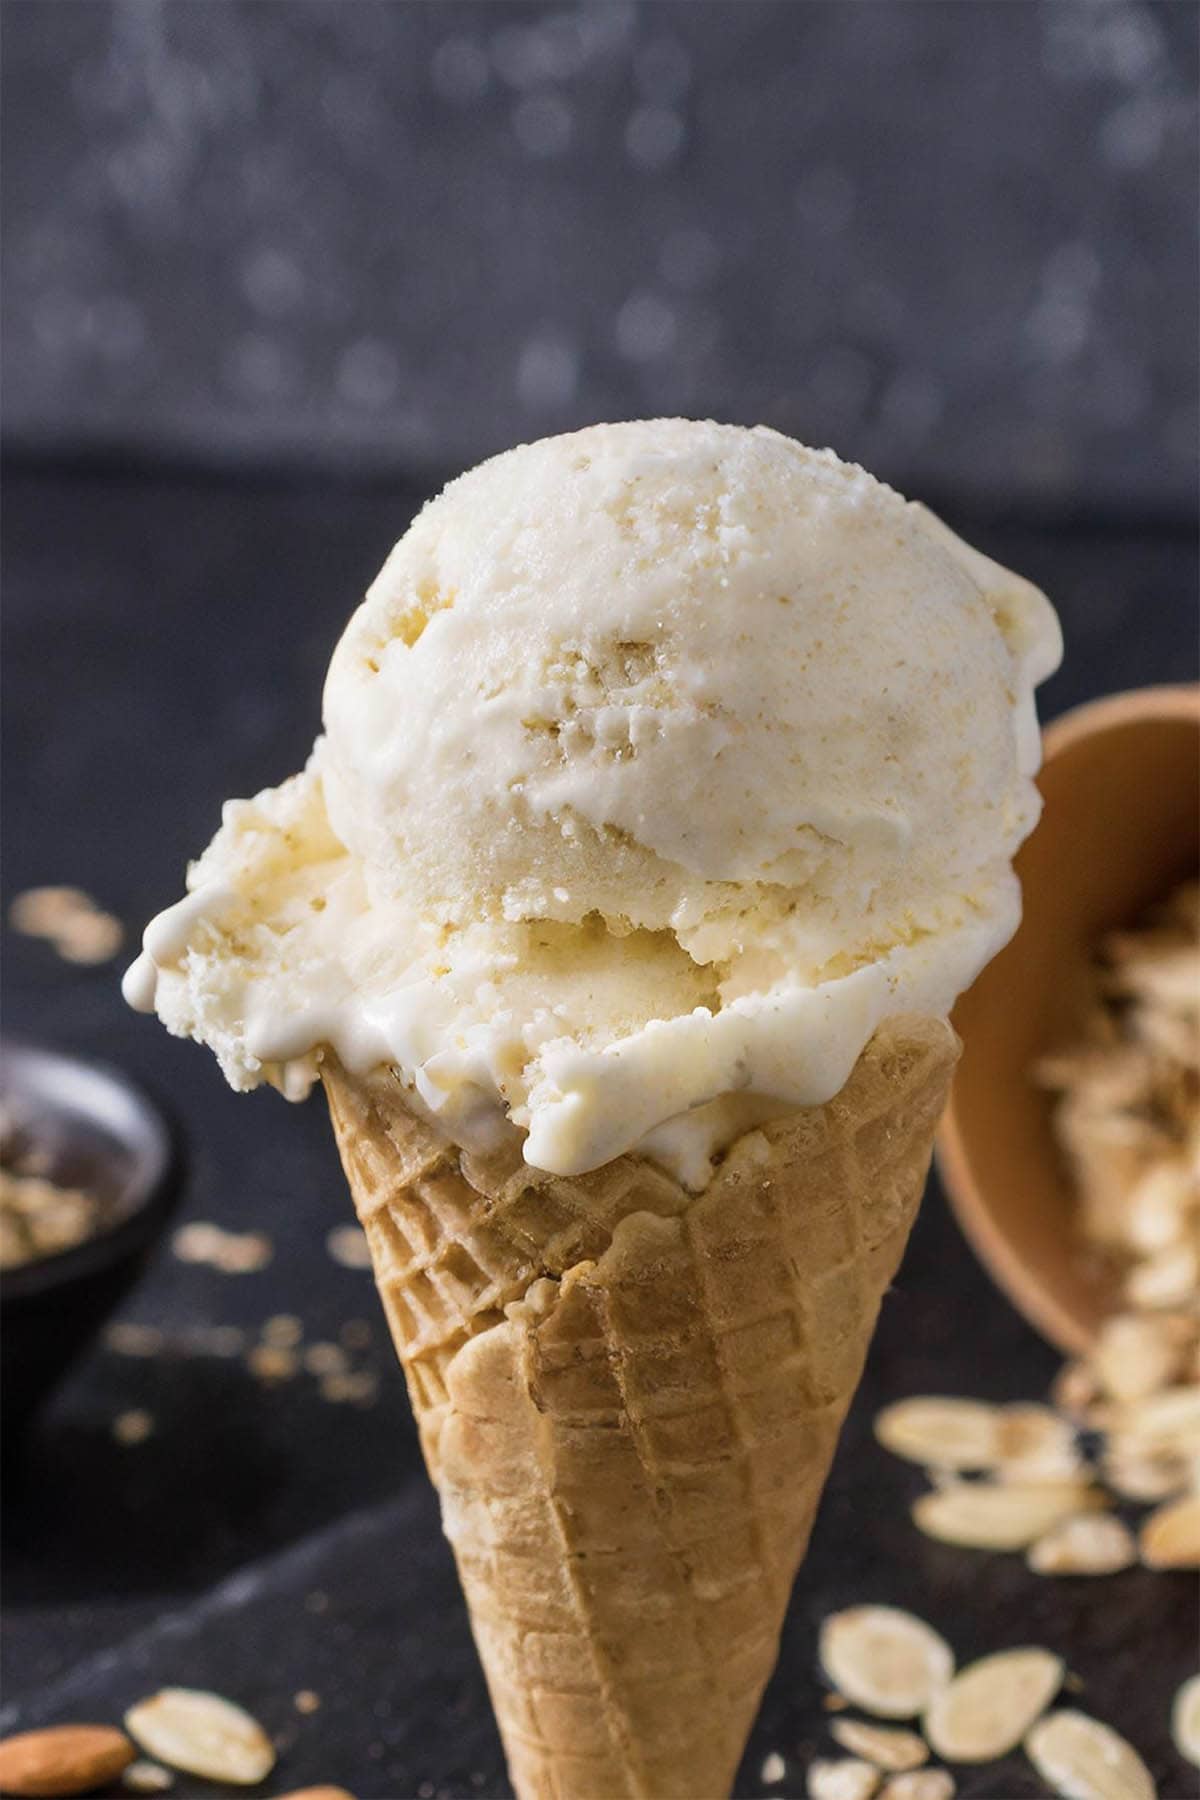 creamy oat milk ice cream in a cone.